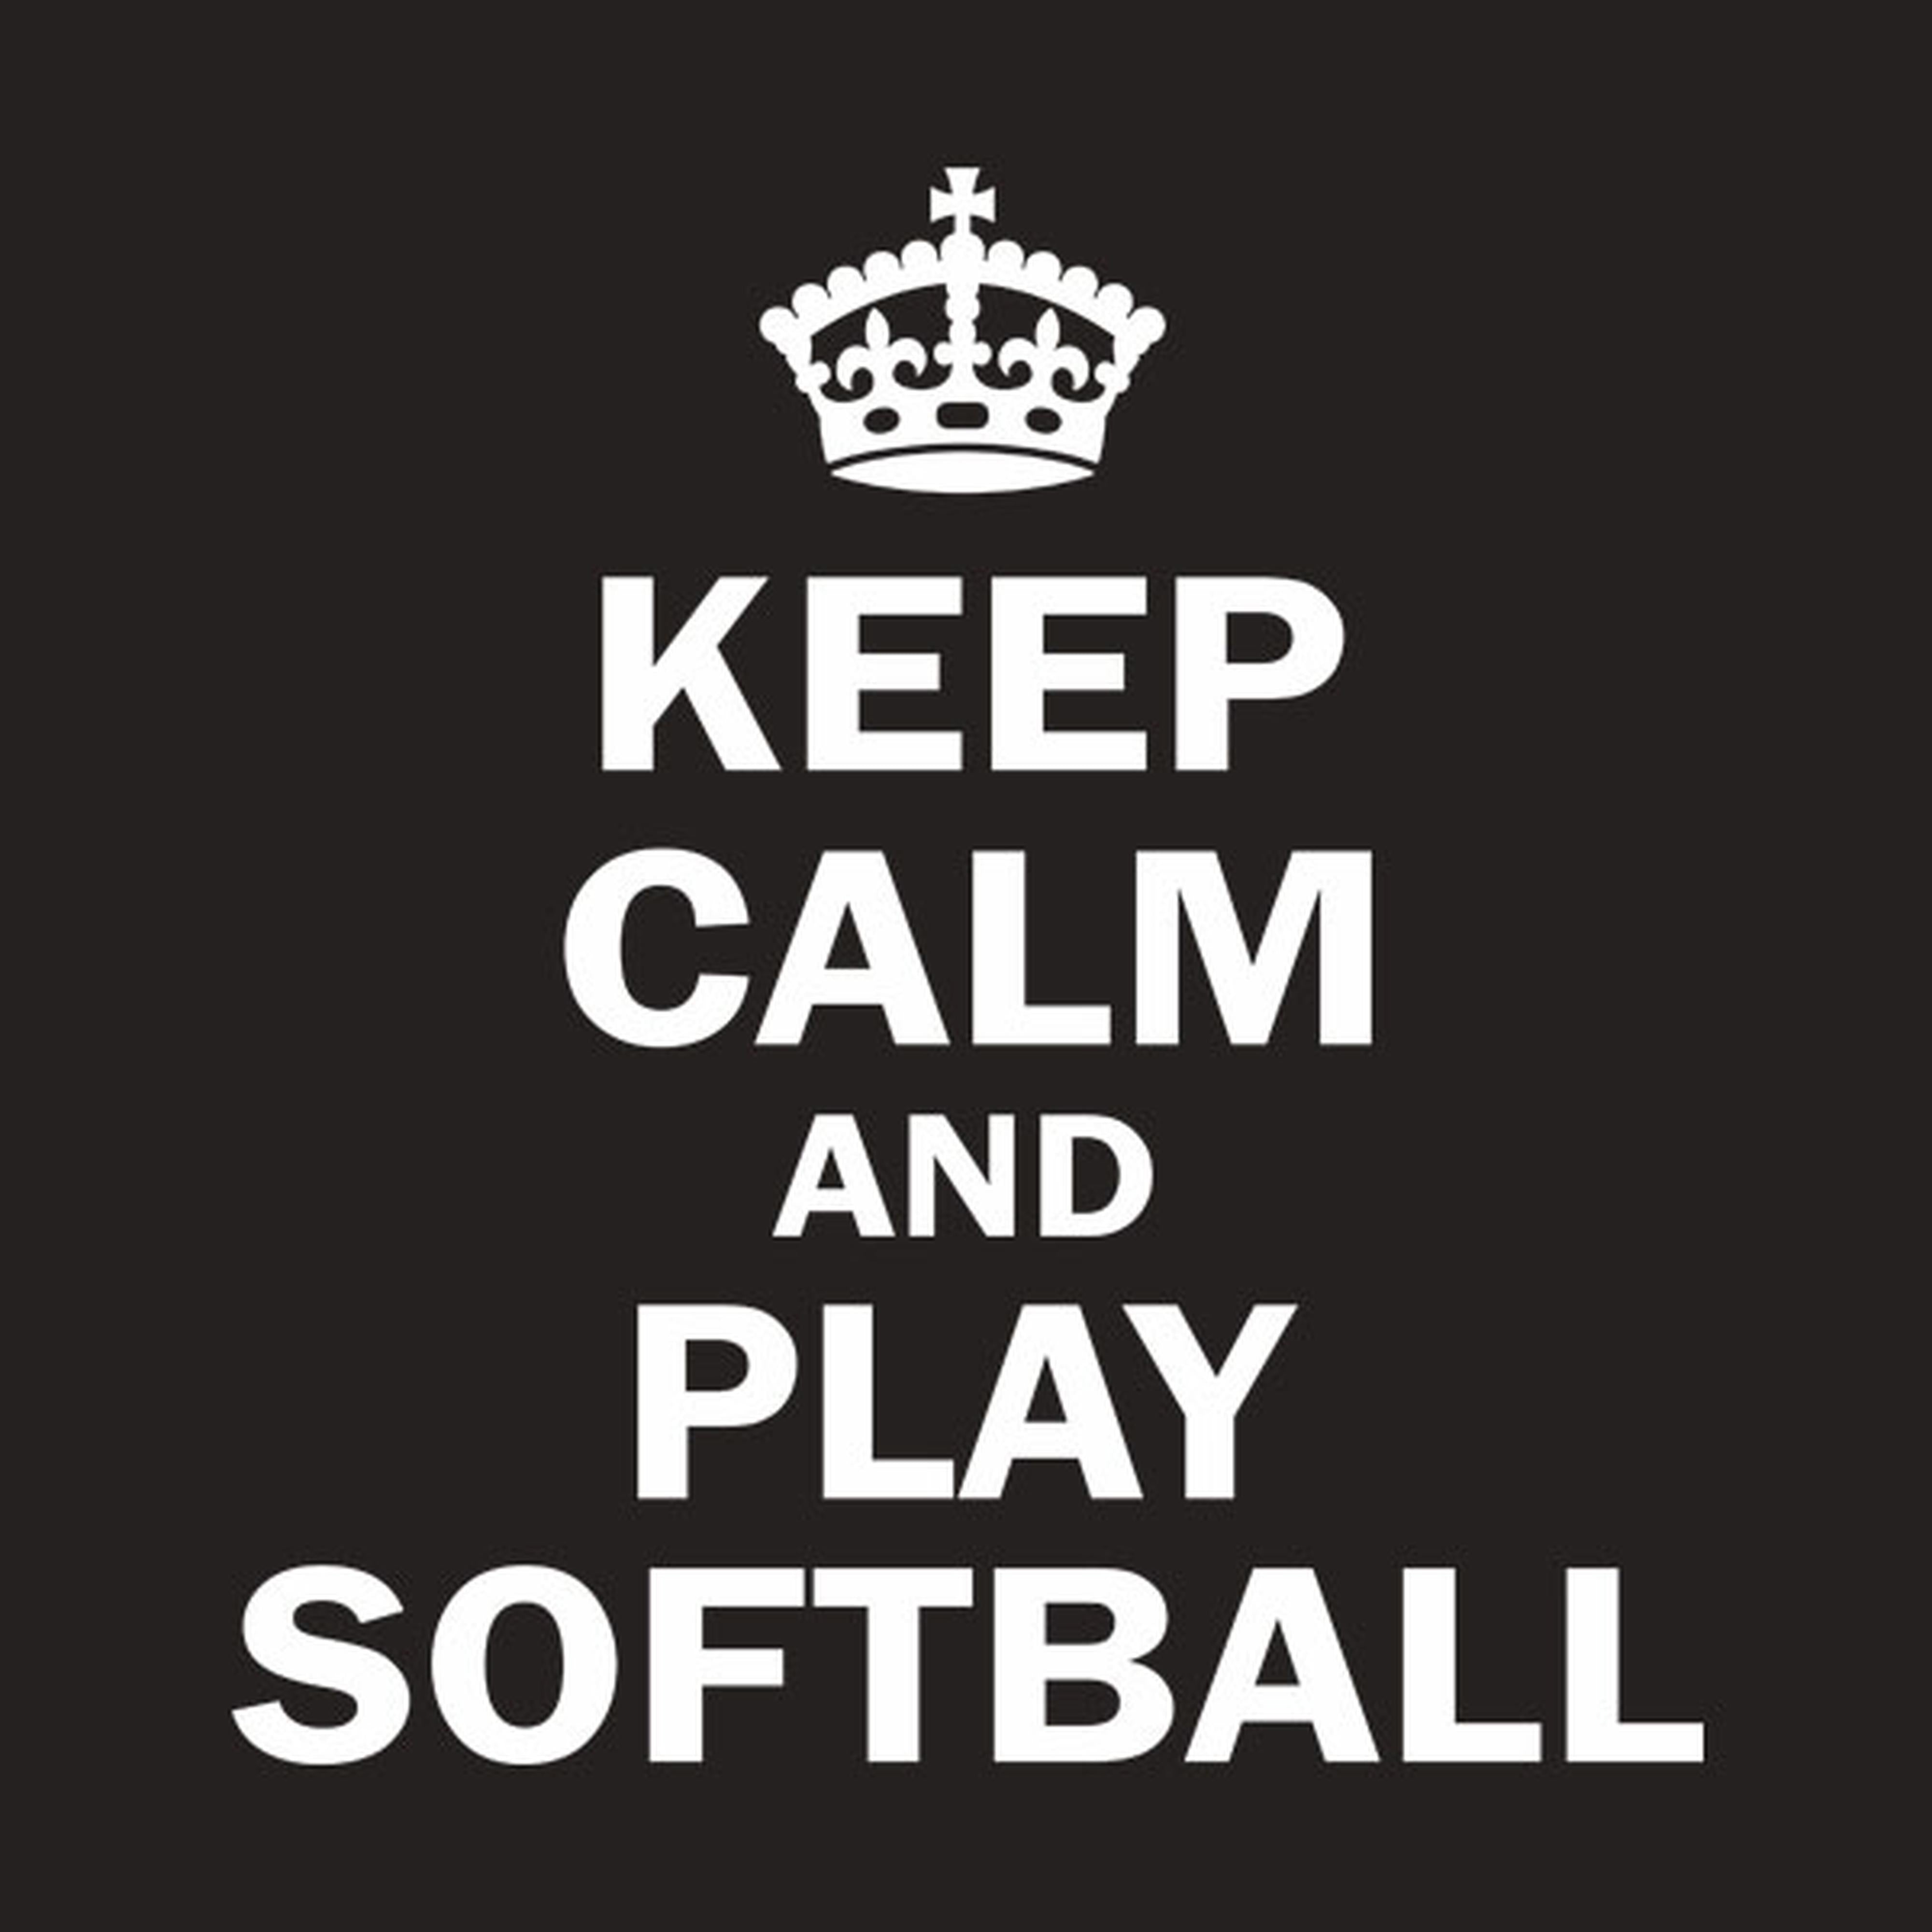 Keep calm and play softball - T-shirt